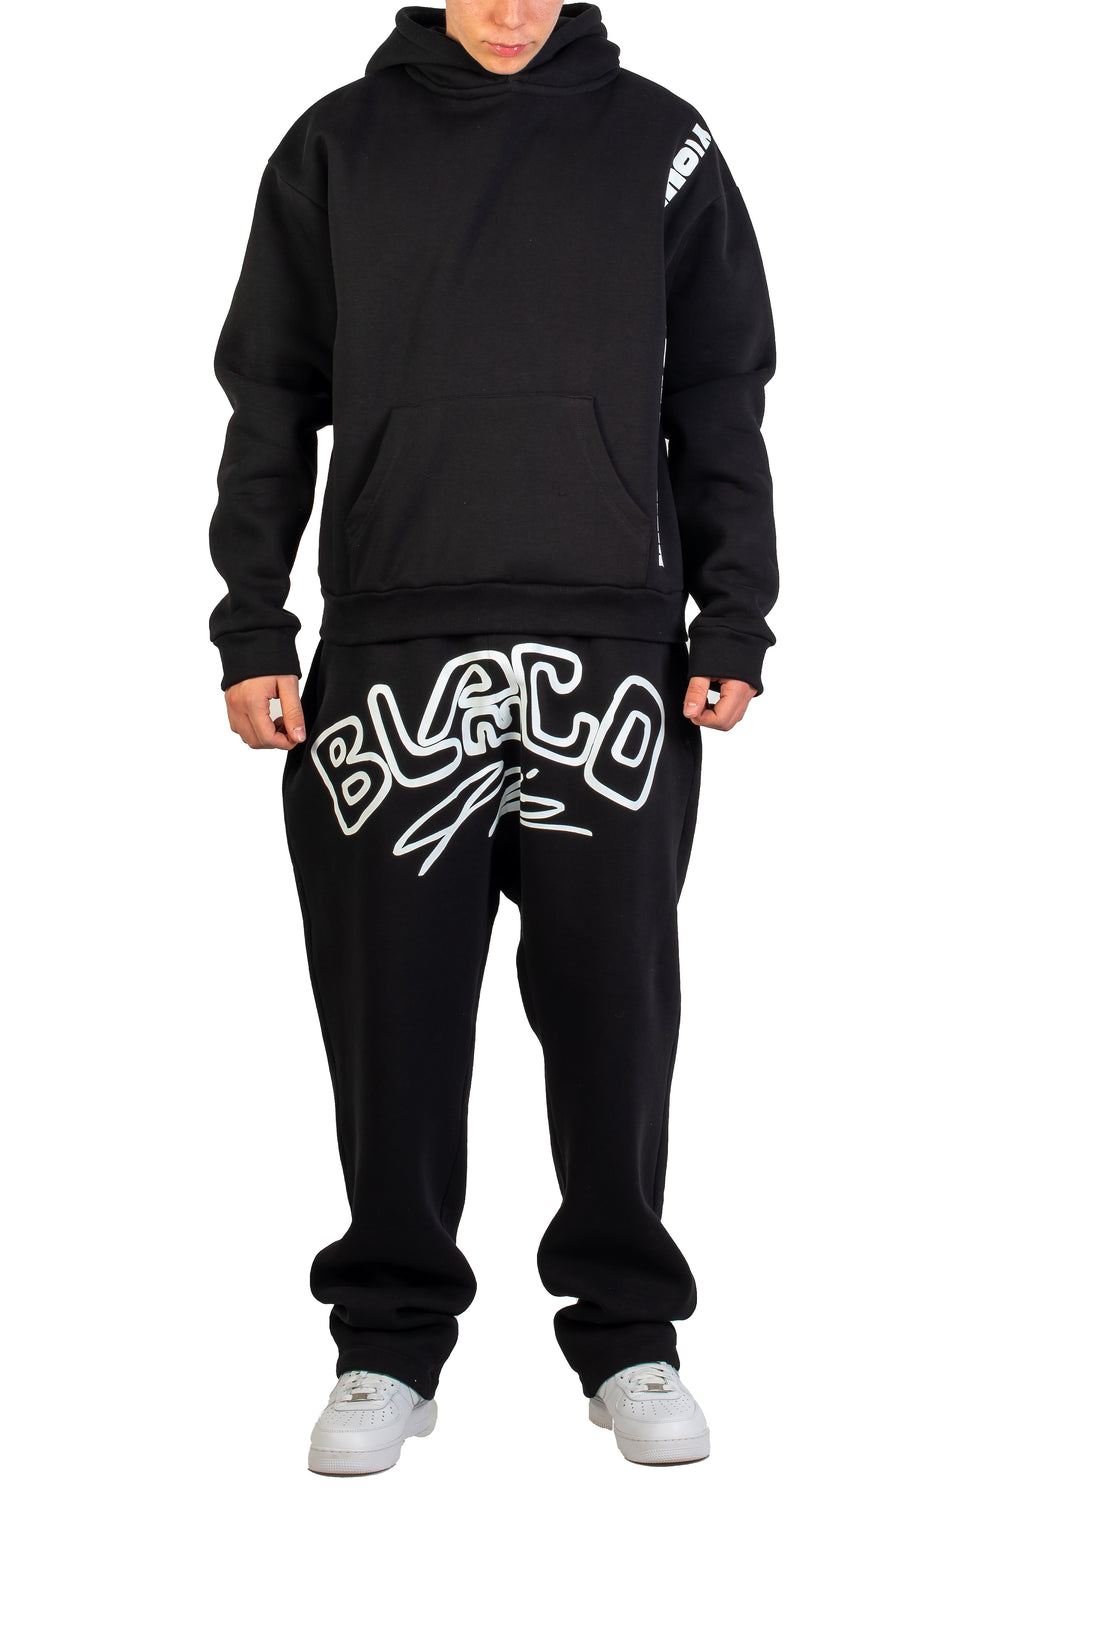 BLANCO AIR Essential Baggy Sweatpants - Black